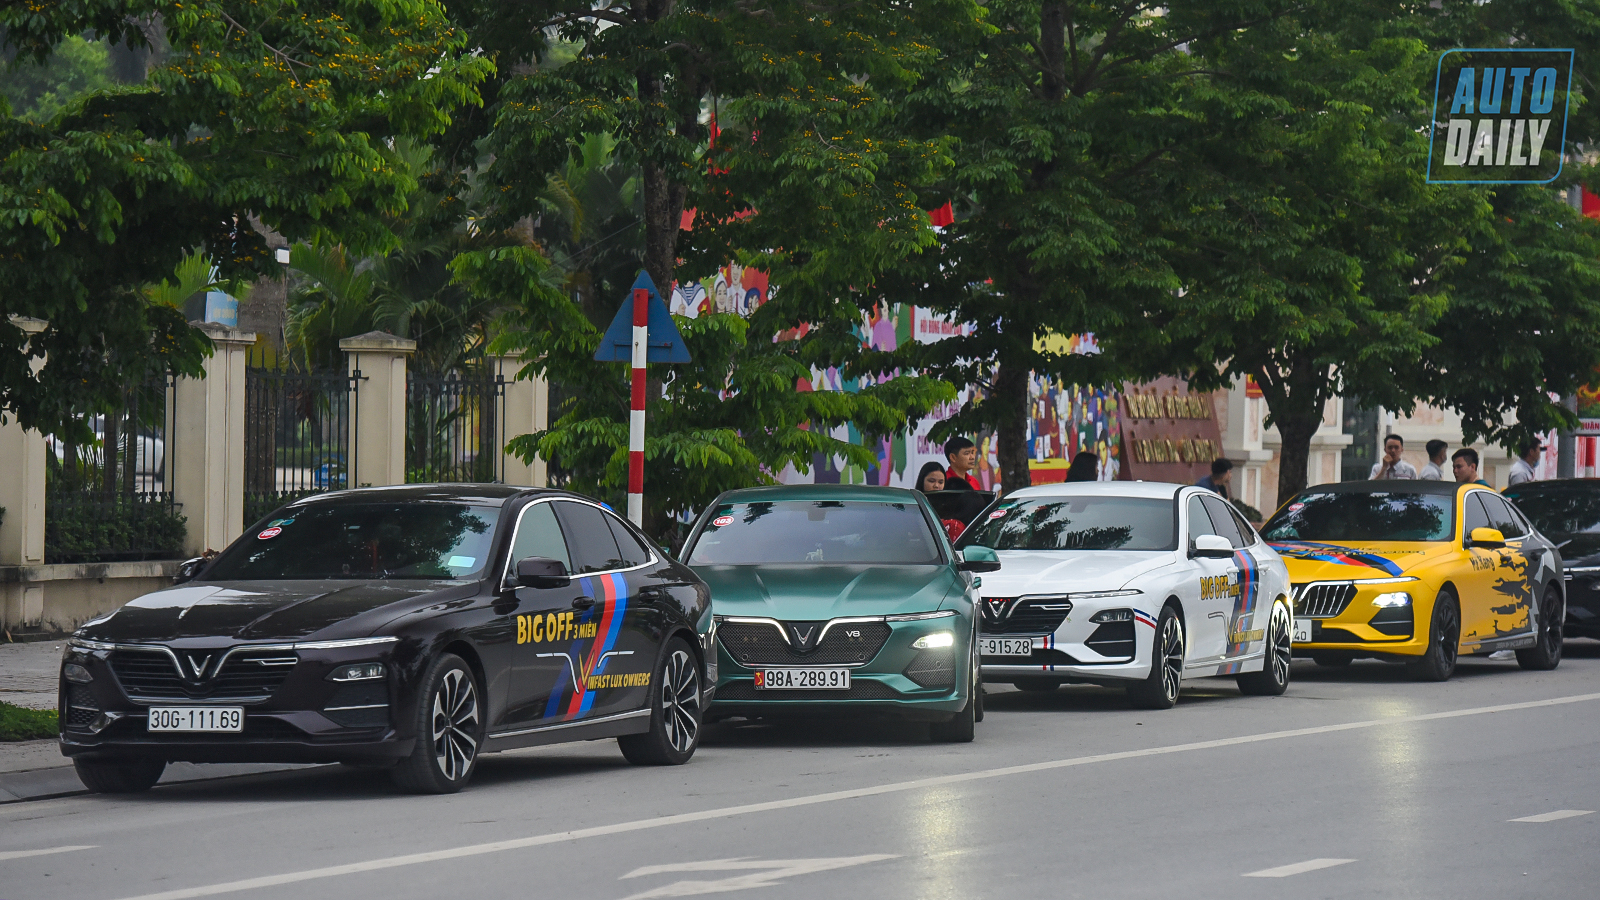 Chùm ảnh gần 60 xe VinFast Lux tại Hà Nội xuất phát Offline 3 miền tại Hội An dsc-62062-copy.jpg